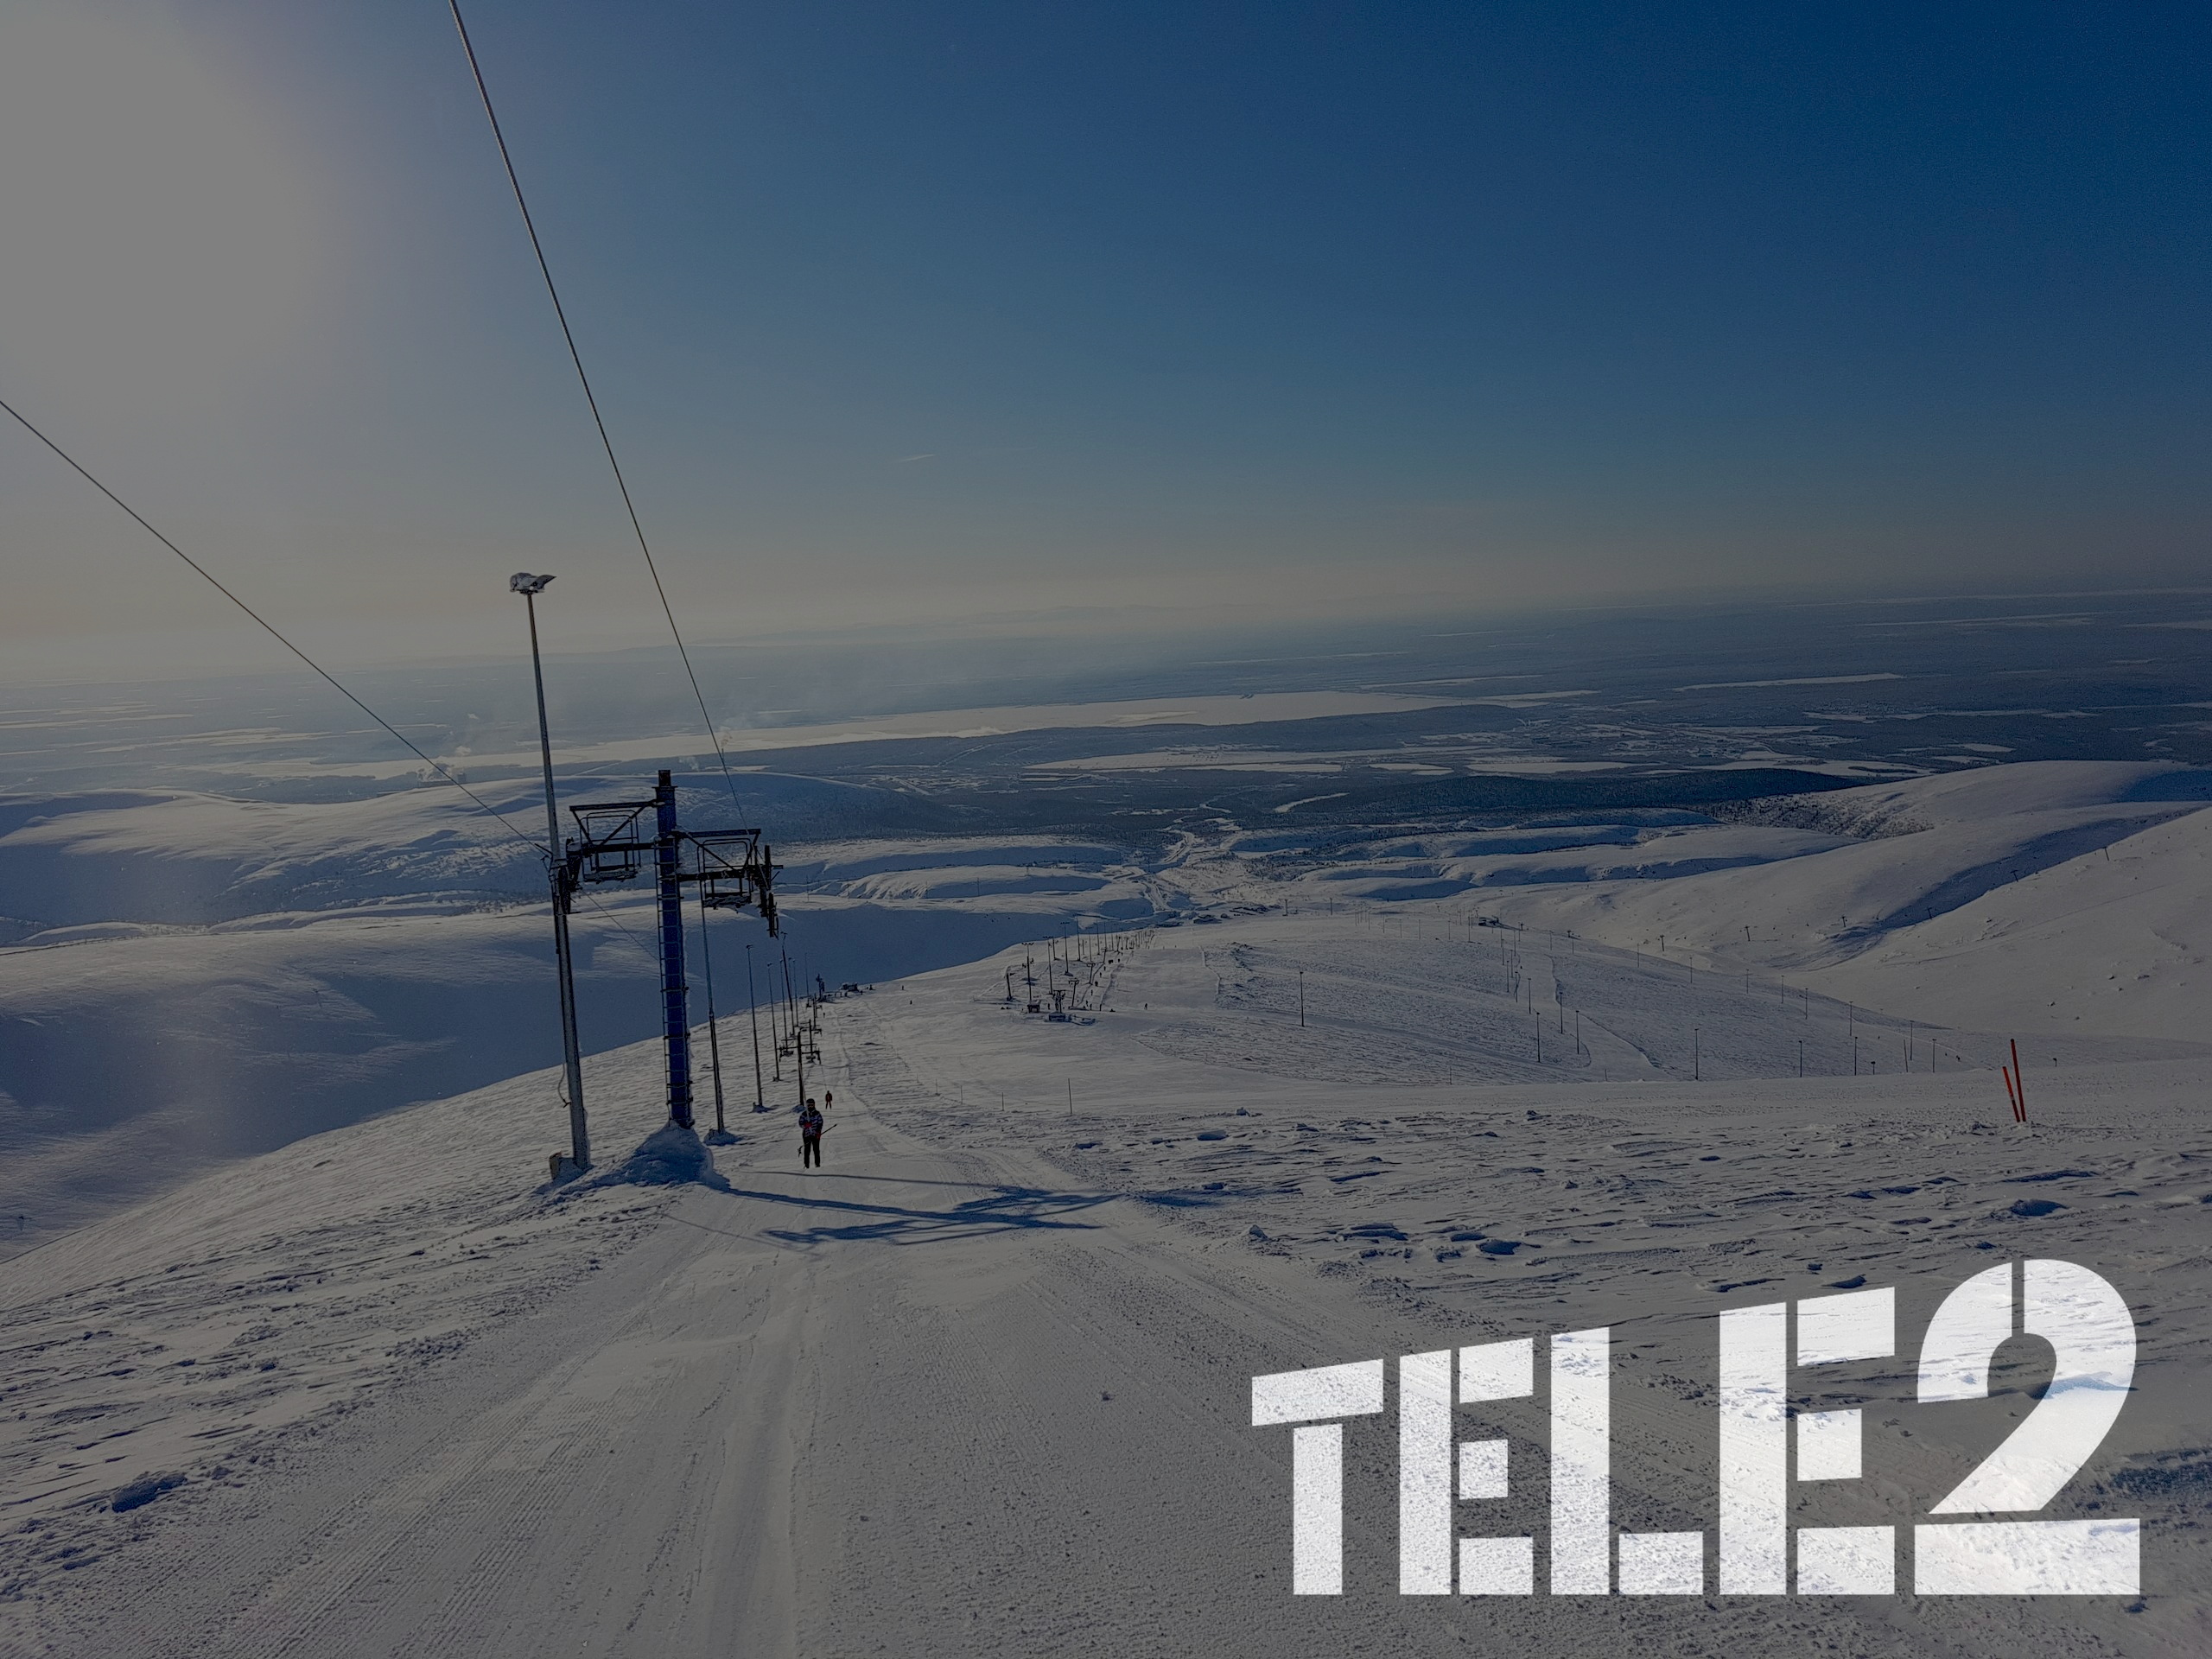 Мурманск для зимнего отдыха выбирали в 2020 году абоненты Tele2 из Москвы и Санкт-Петербурга 1